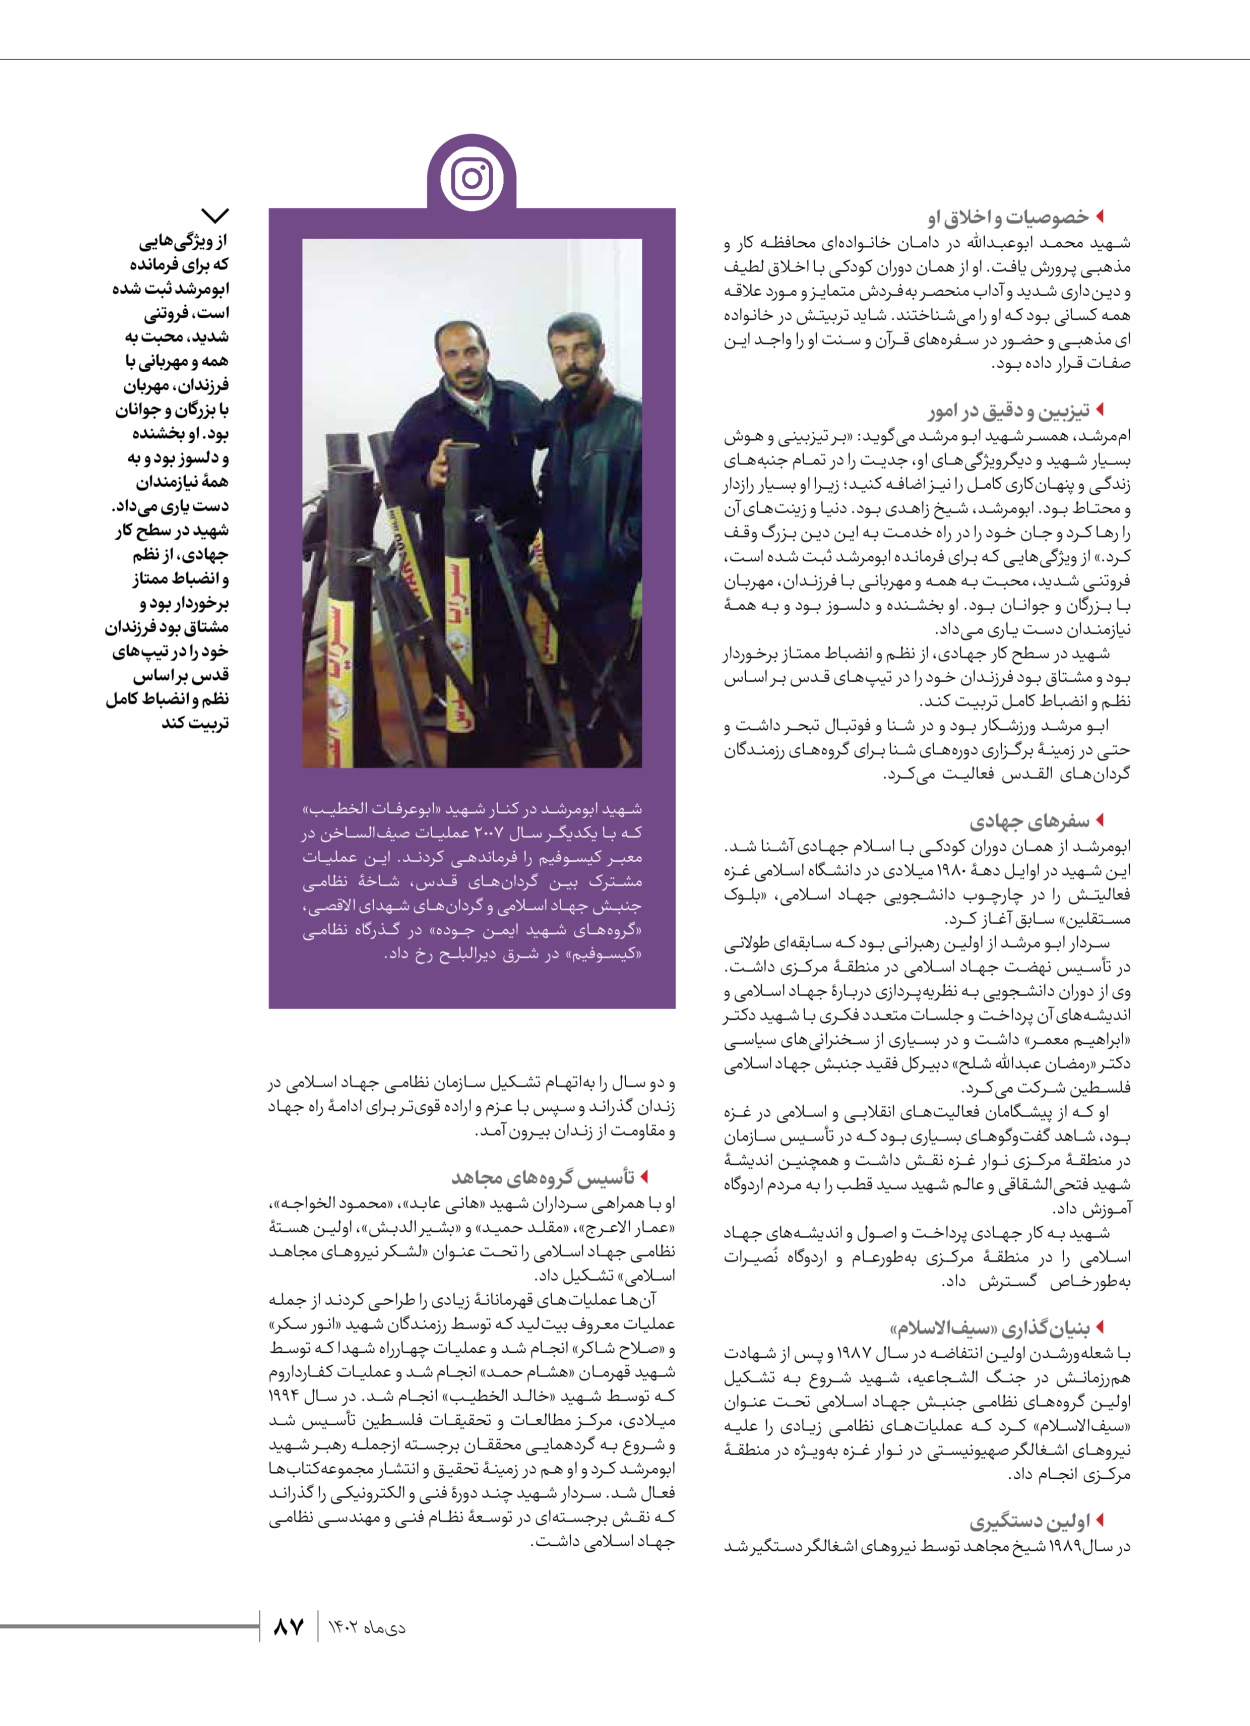 روزنامه ایران - ویژه نامه شهدای قدس ۲ - ۲۳ دی ۱۴۰۲ - صفحه ۸۷